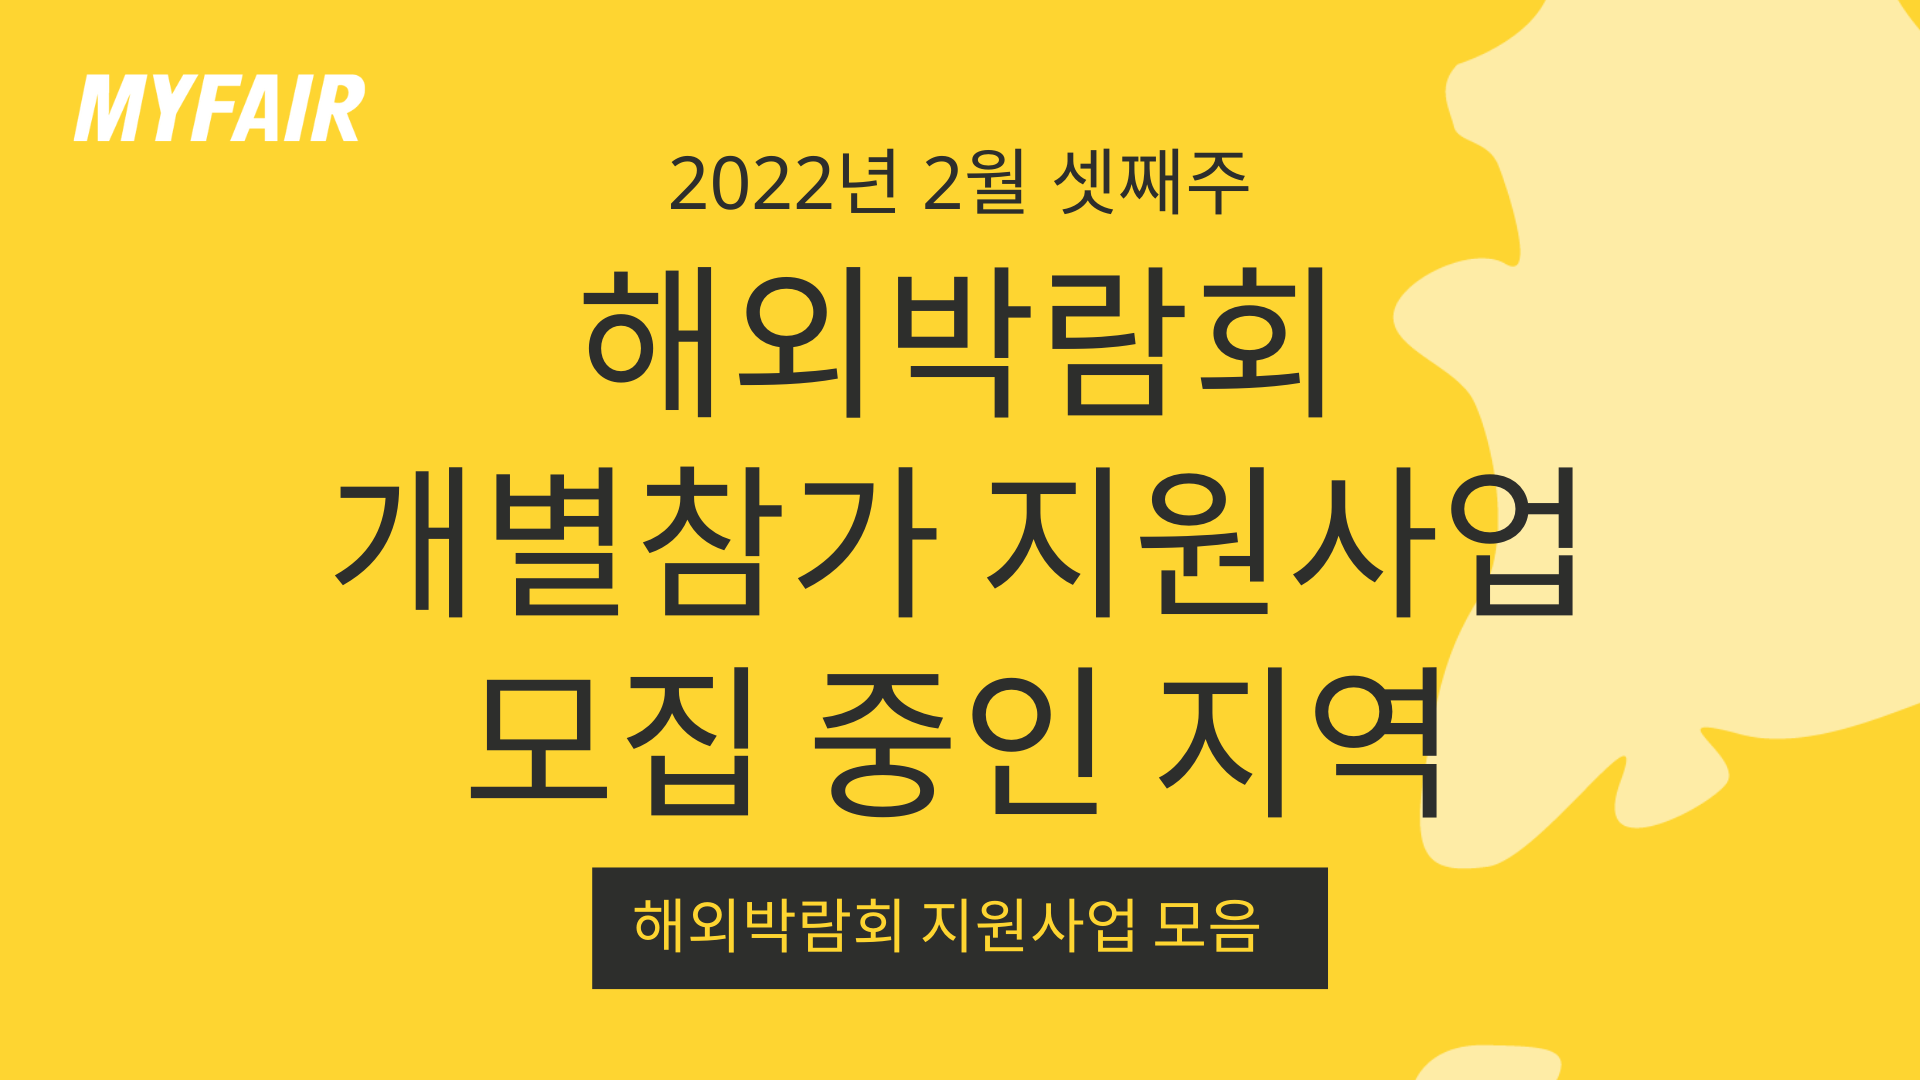 [마이페어] 2022년 해외박람회 개별참가 지원사업 모집 지역 (02.16 기준)